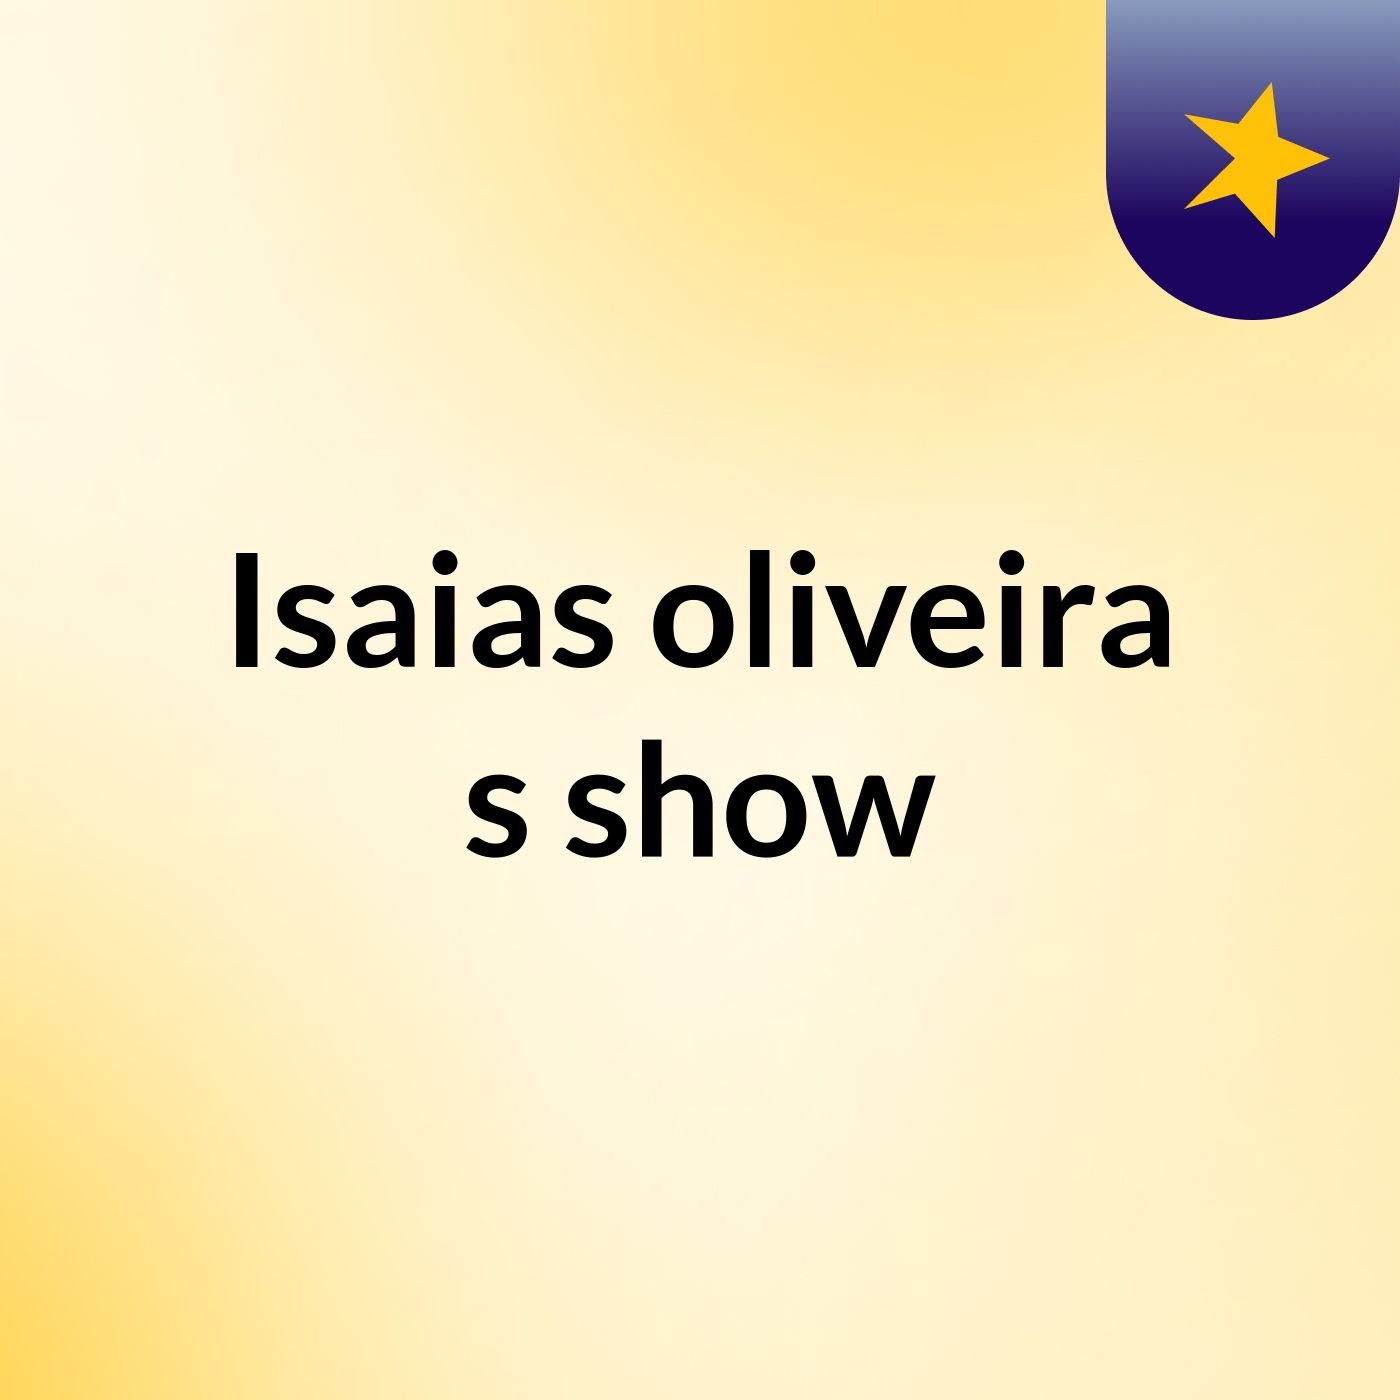 Episódio 29 - Isaias oliveira's show